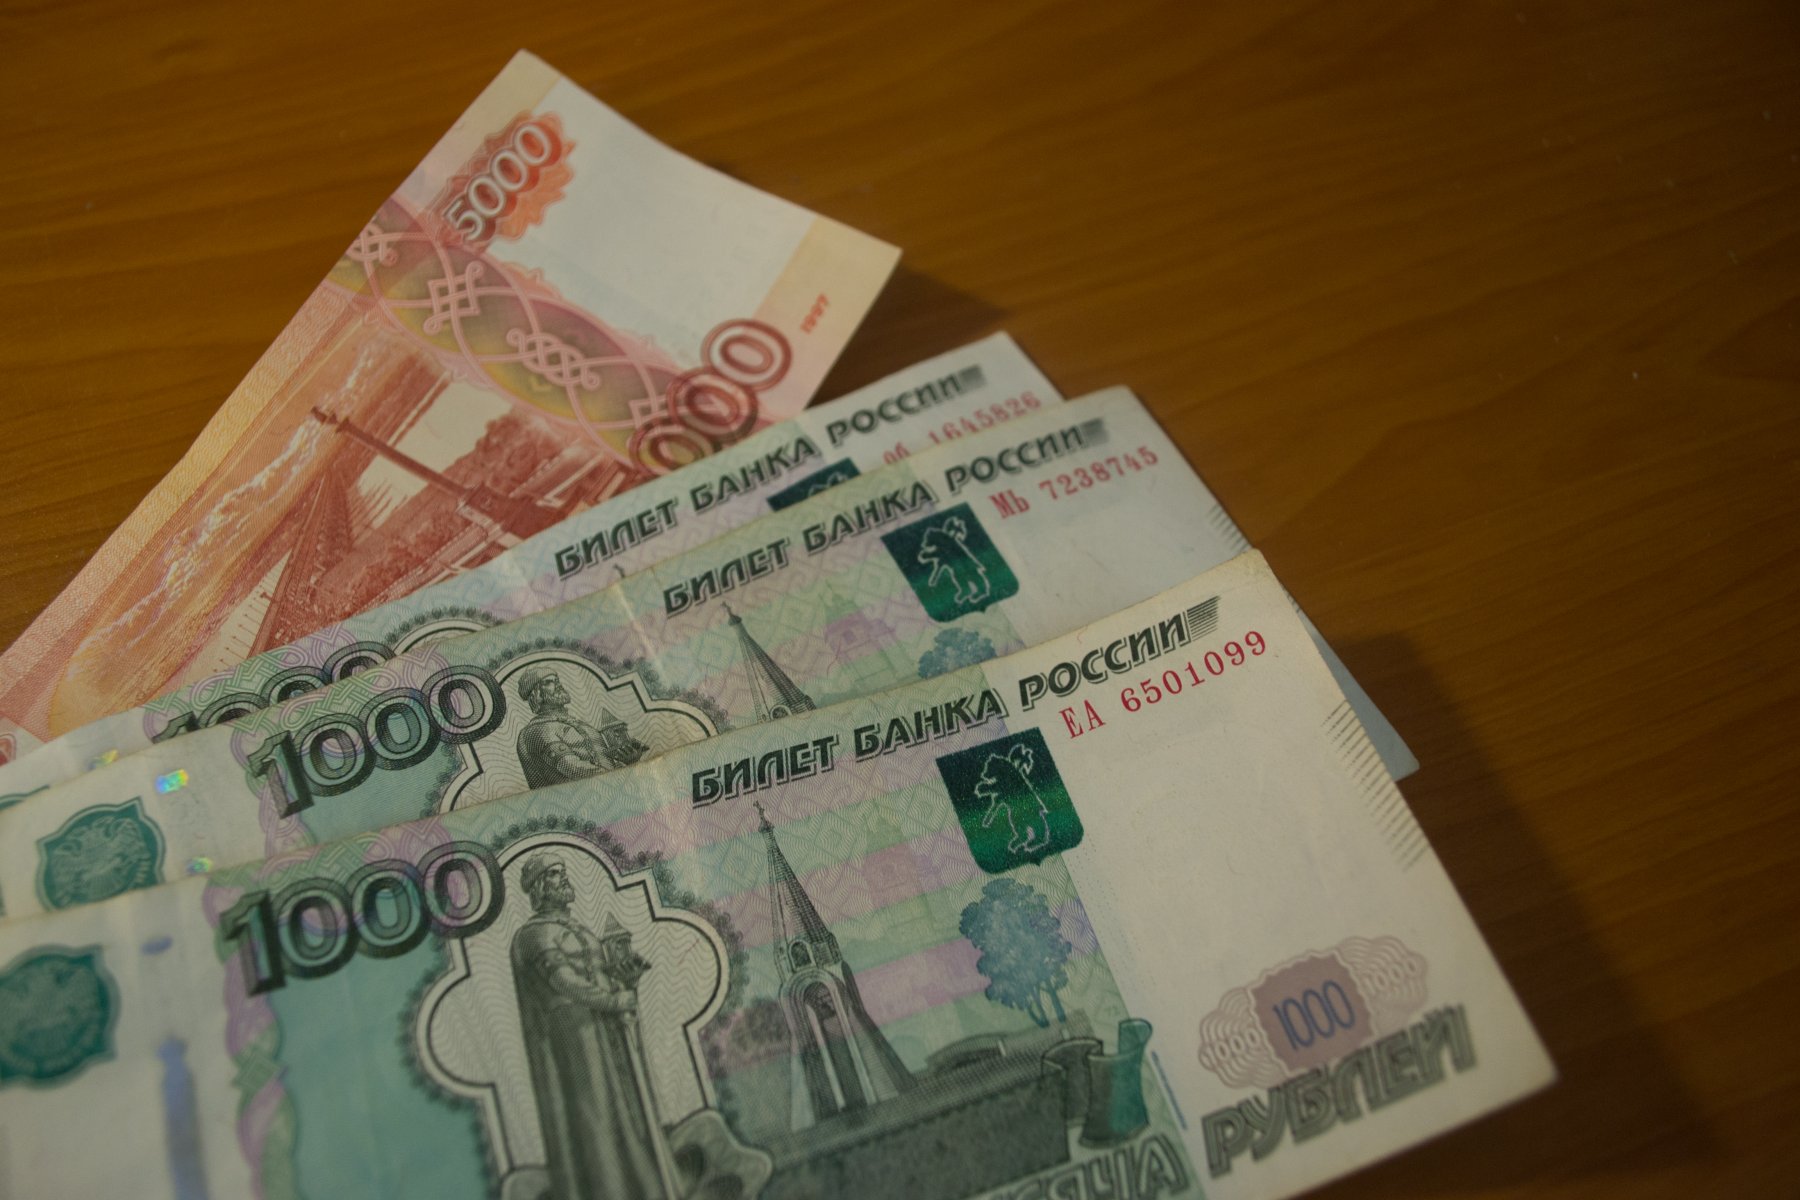 Представившиеся соцработниками мошенники ограбили пенсионеров в Серпухове